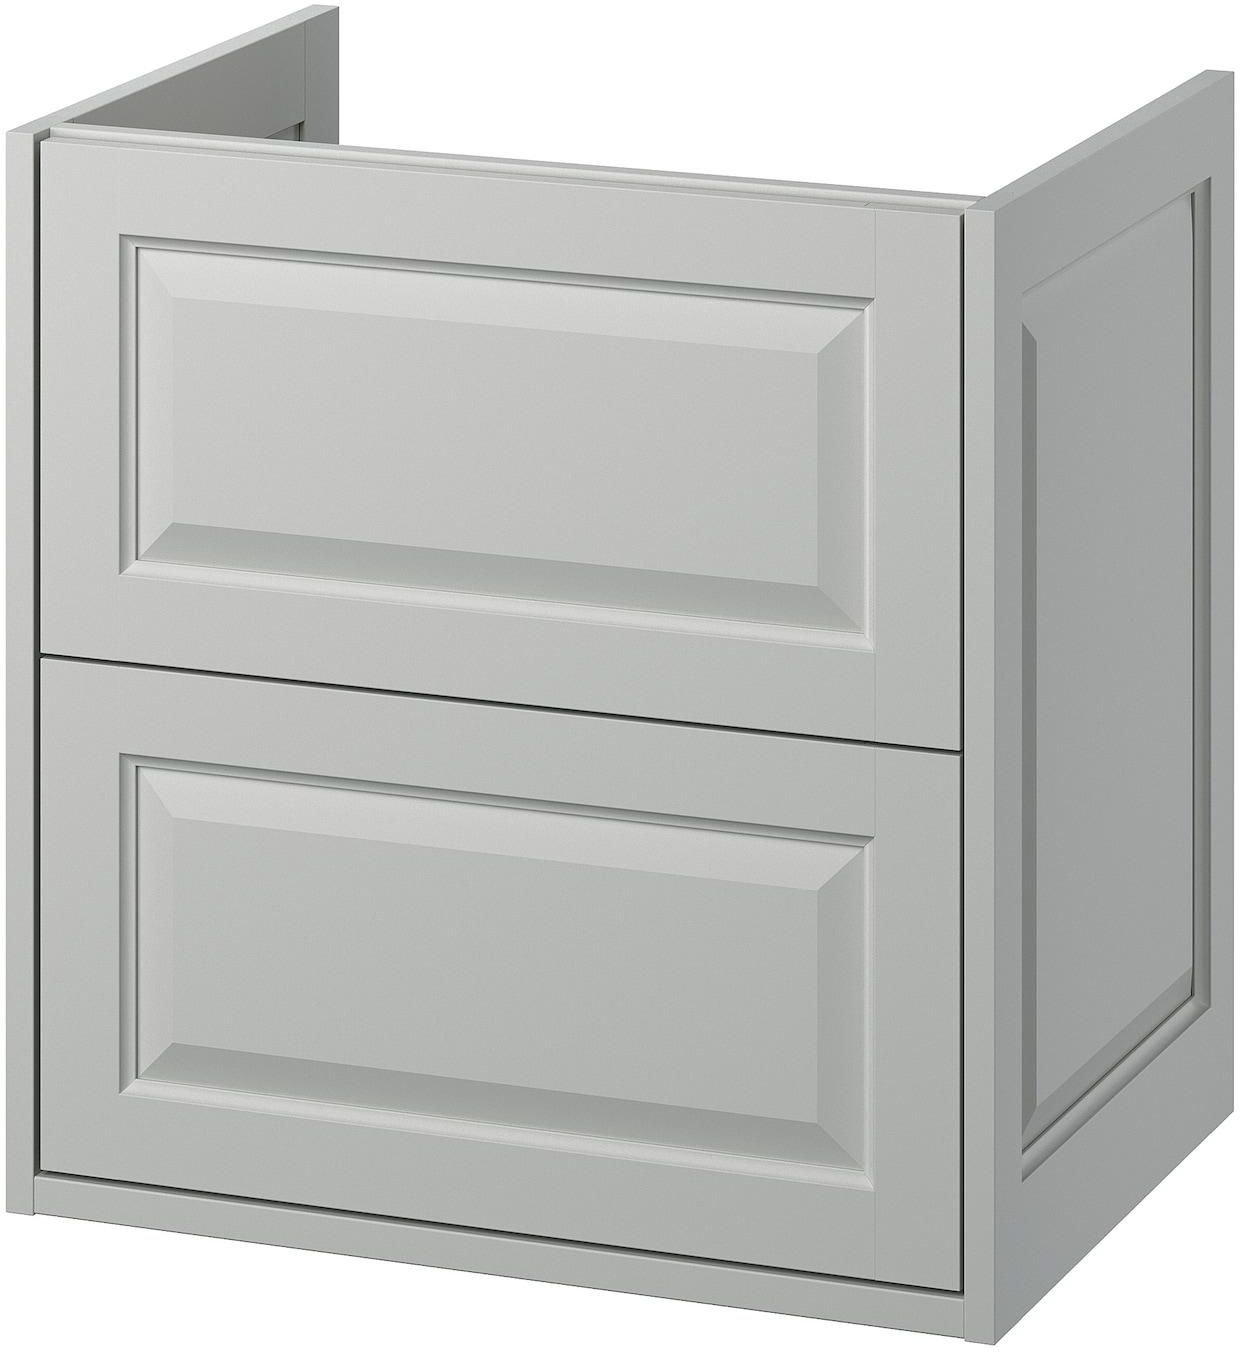 TÄNNFORSEN Wash-stand with drawers - light grey 60x48x63 cm